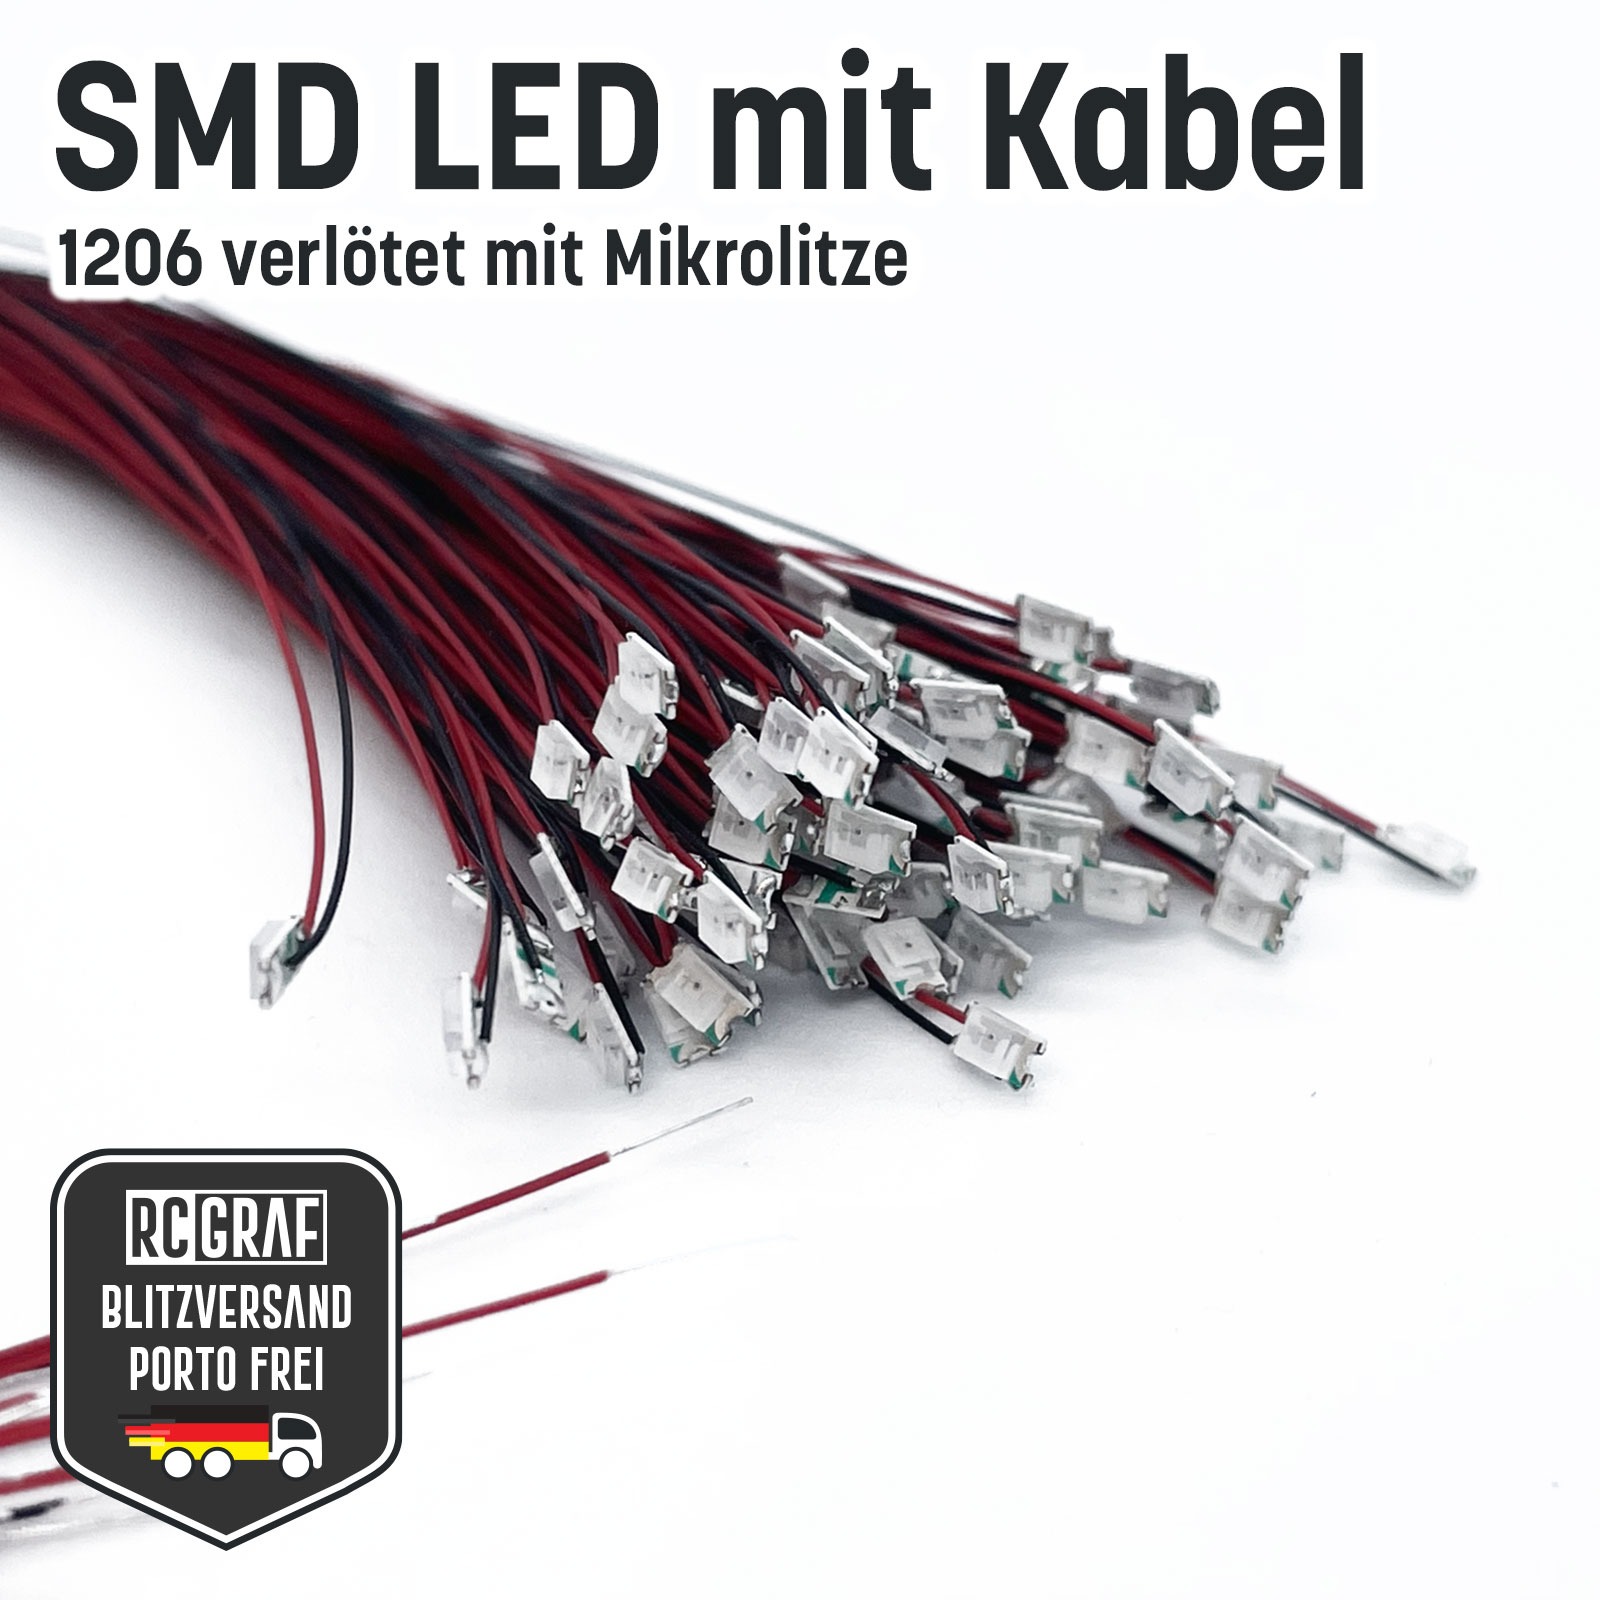 SMD LED 1206 Microlitze 30cm verlötet